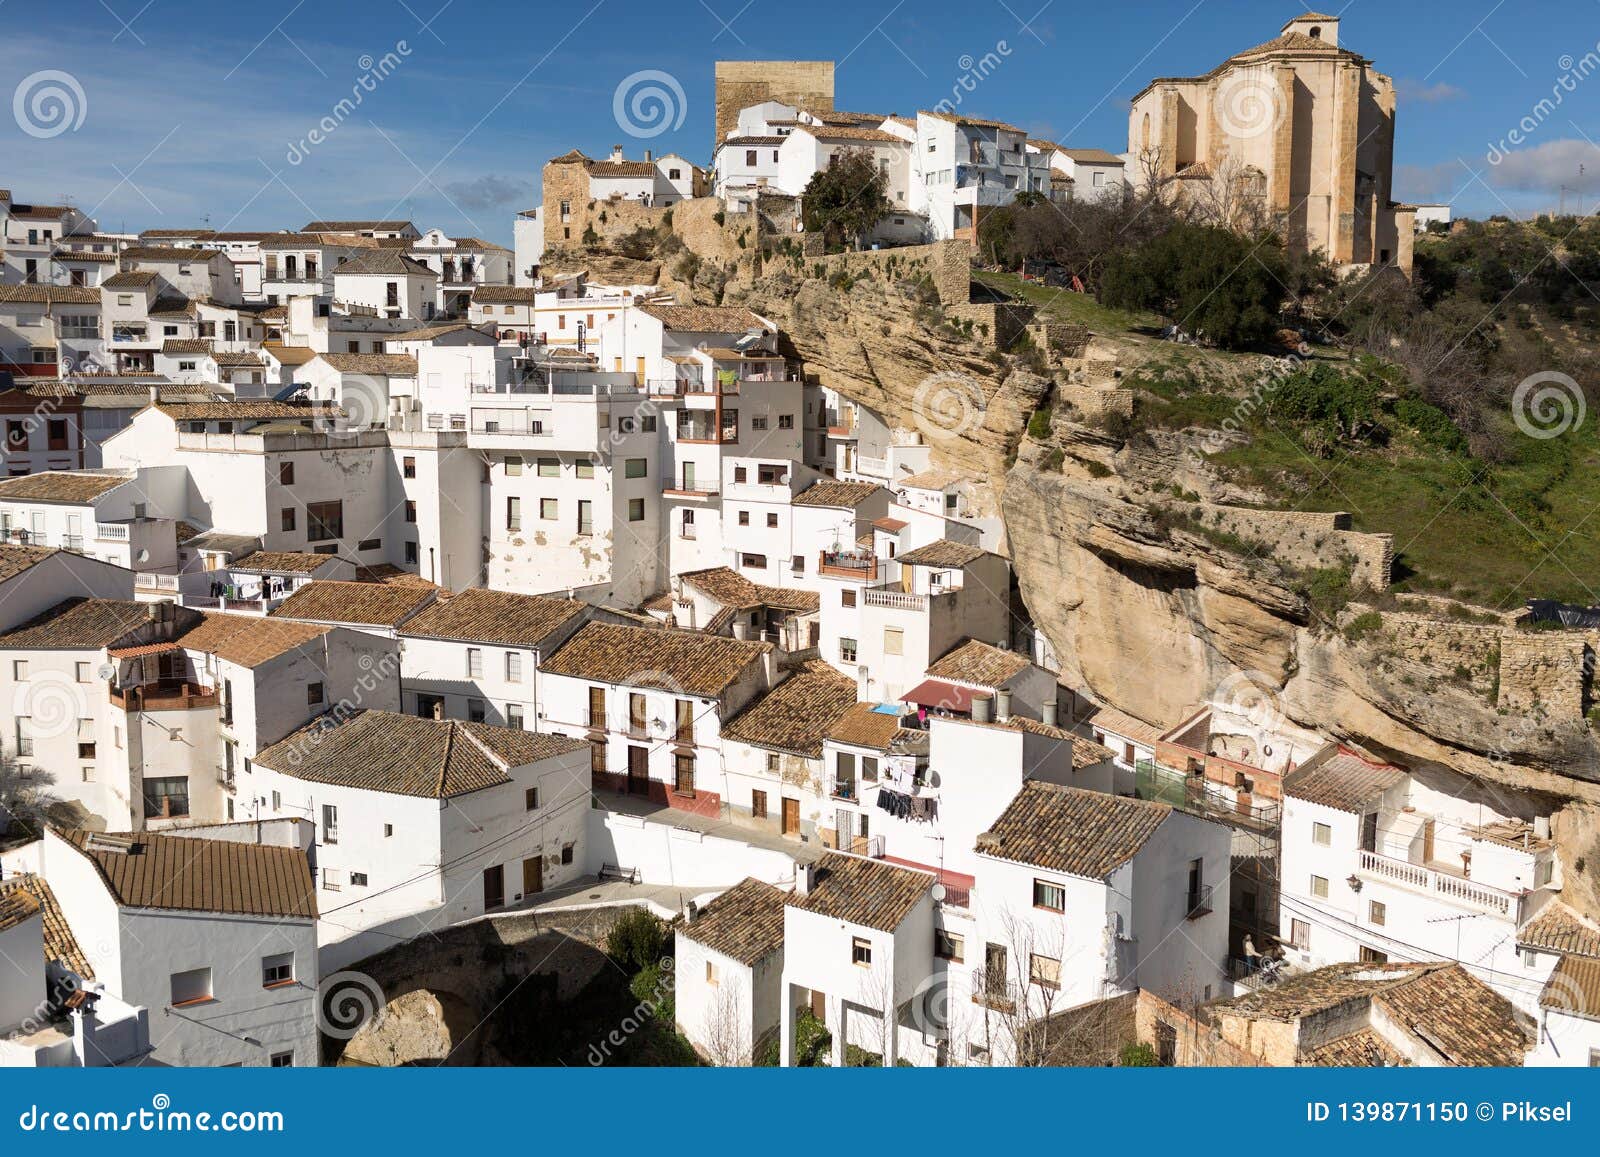 houses built into rock setenil de las bodegas